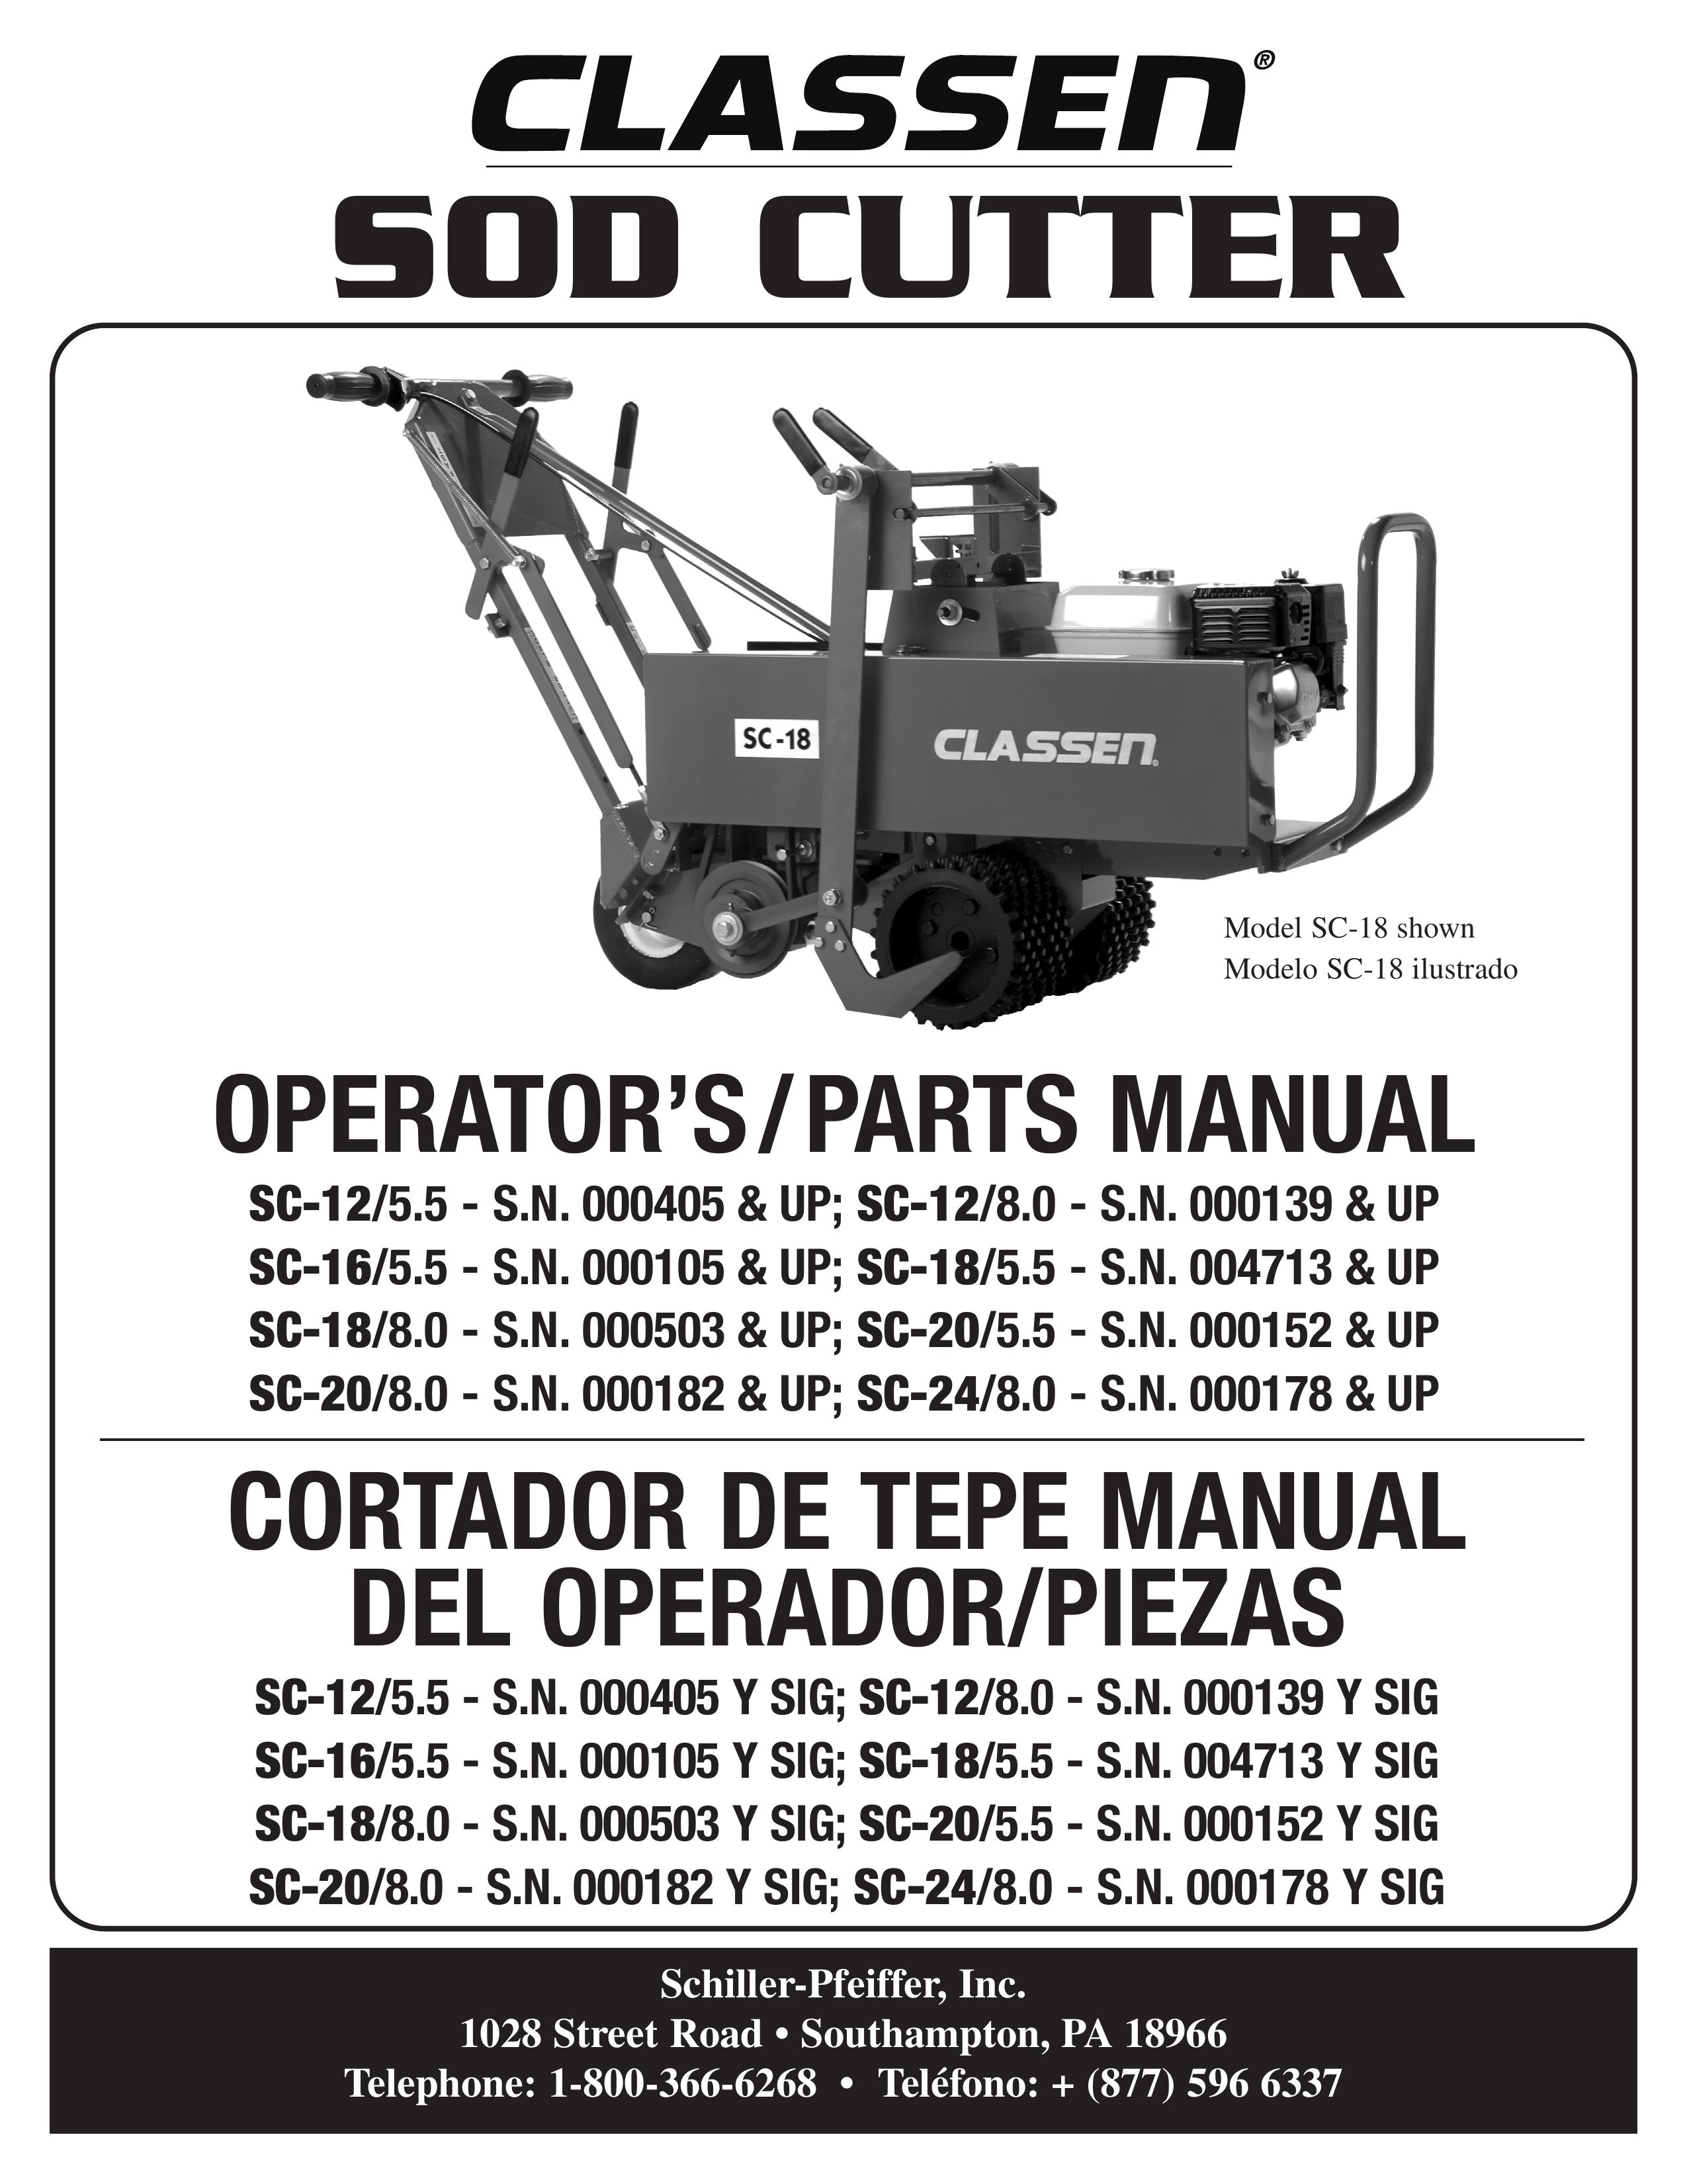 Classen SC-12/5.5 Brush Cutter User Manual